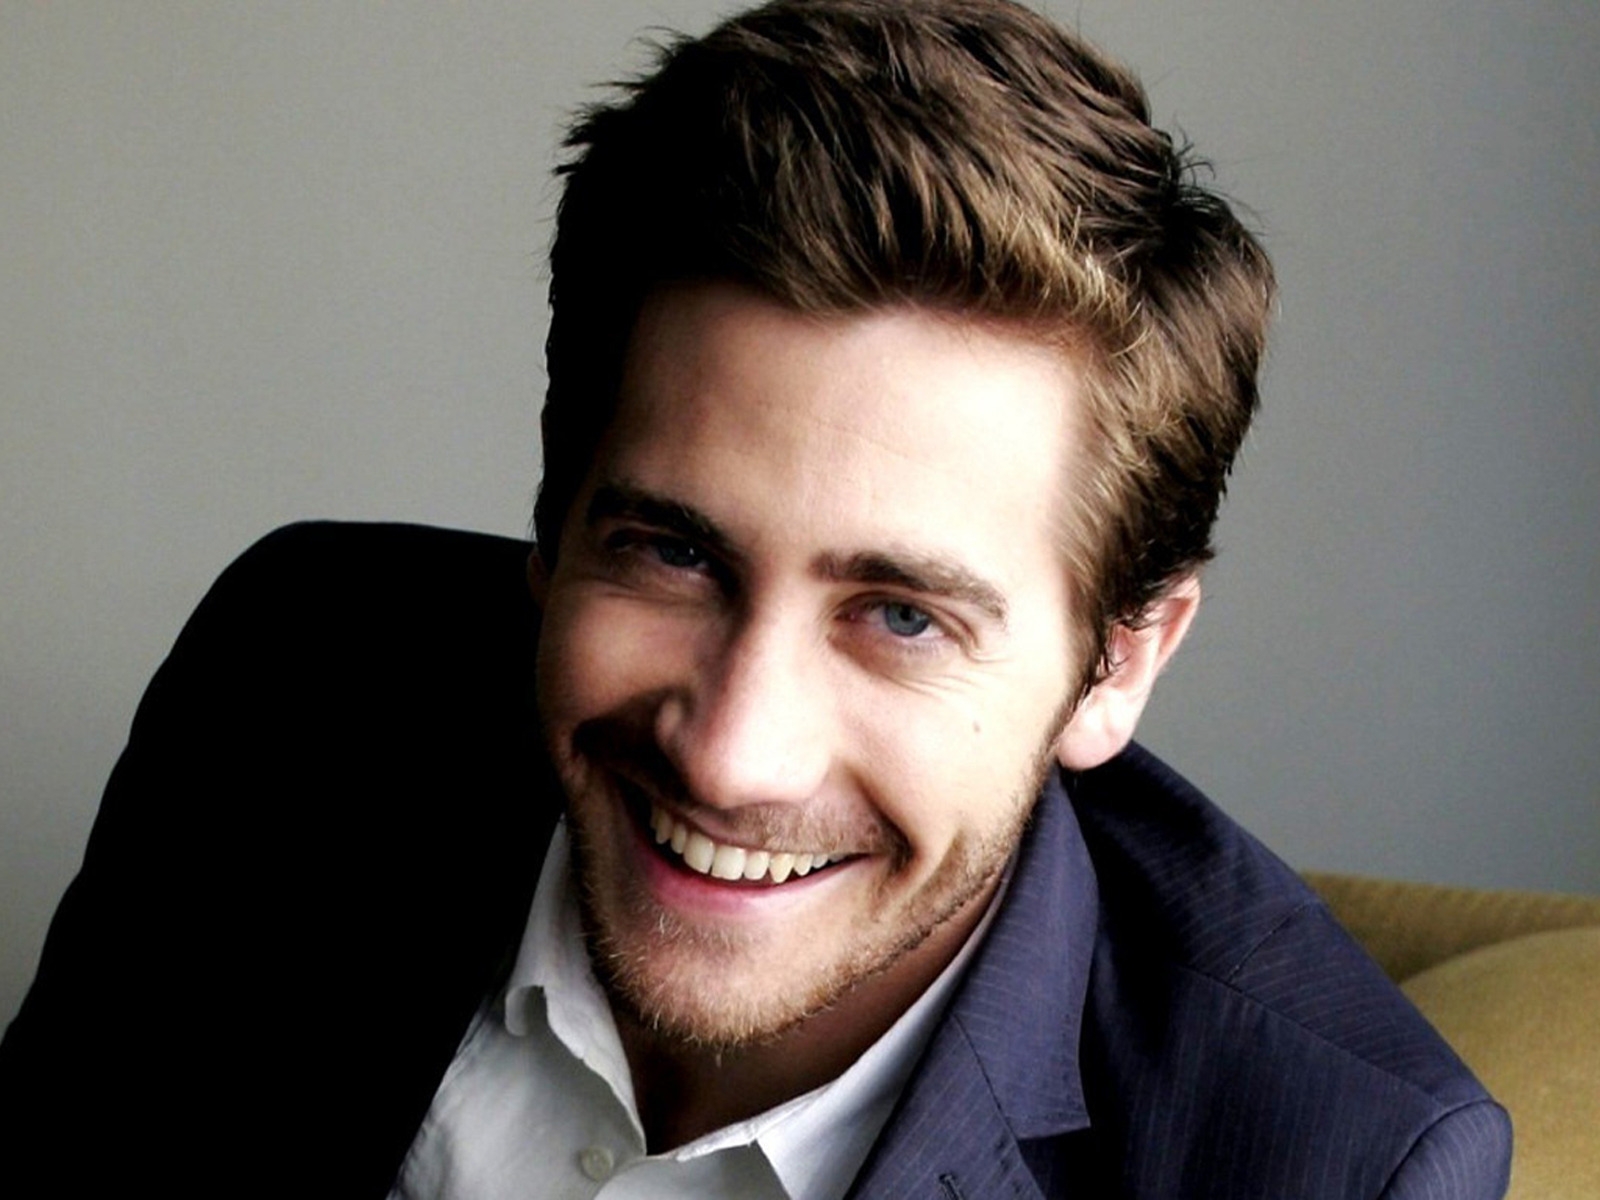 Jake Gyllenhaal Smile for 1600 x 1200 resolution